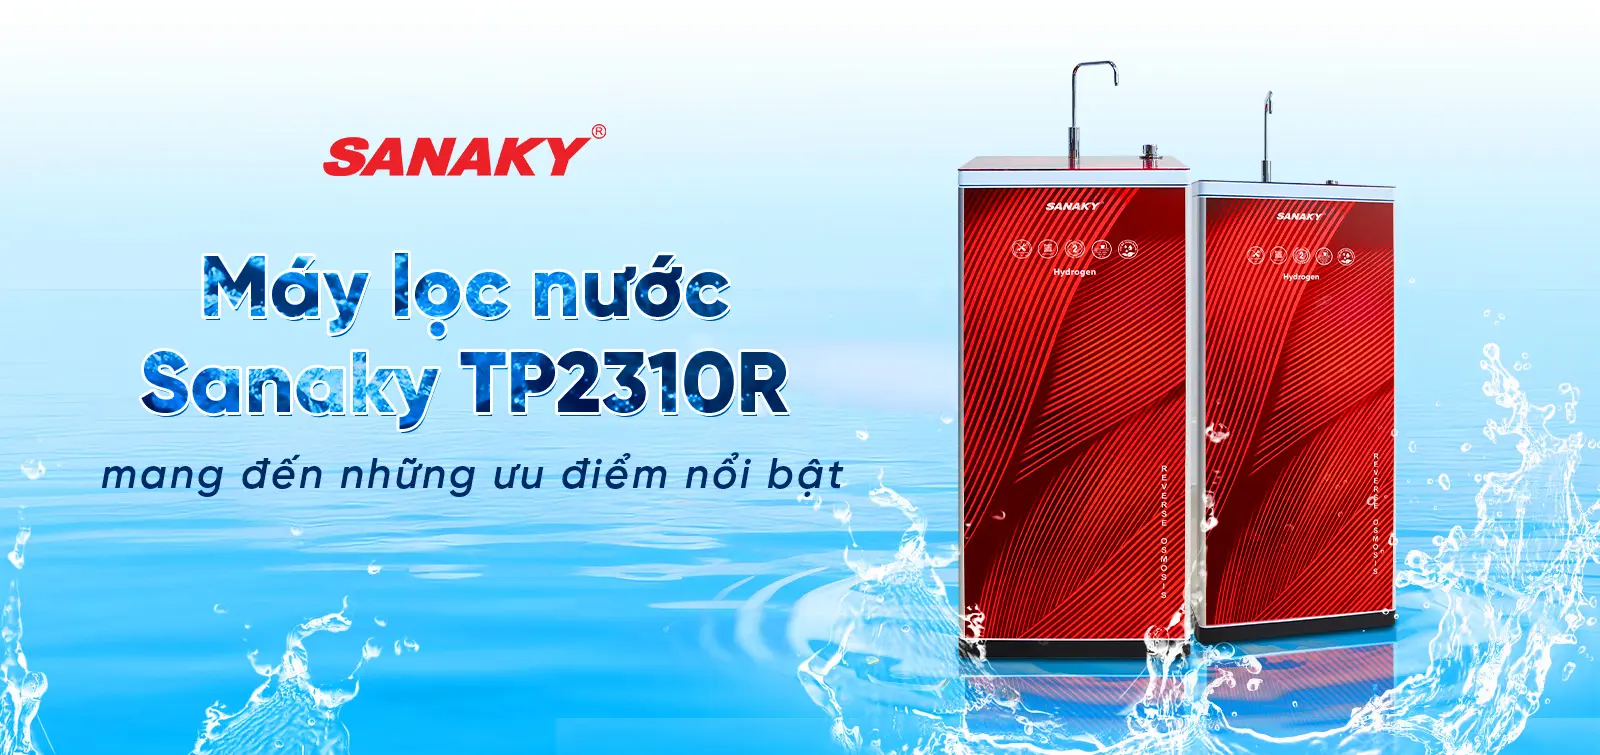 Máy lọc nước Sanaky TP2310R mang đến những ưu điểm nổi bật